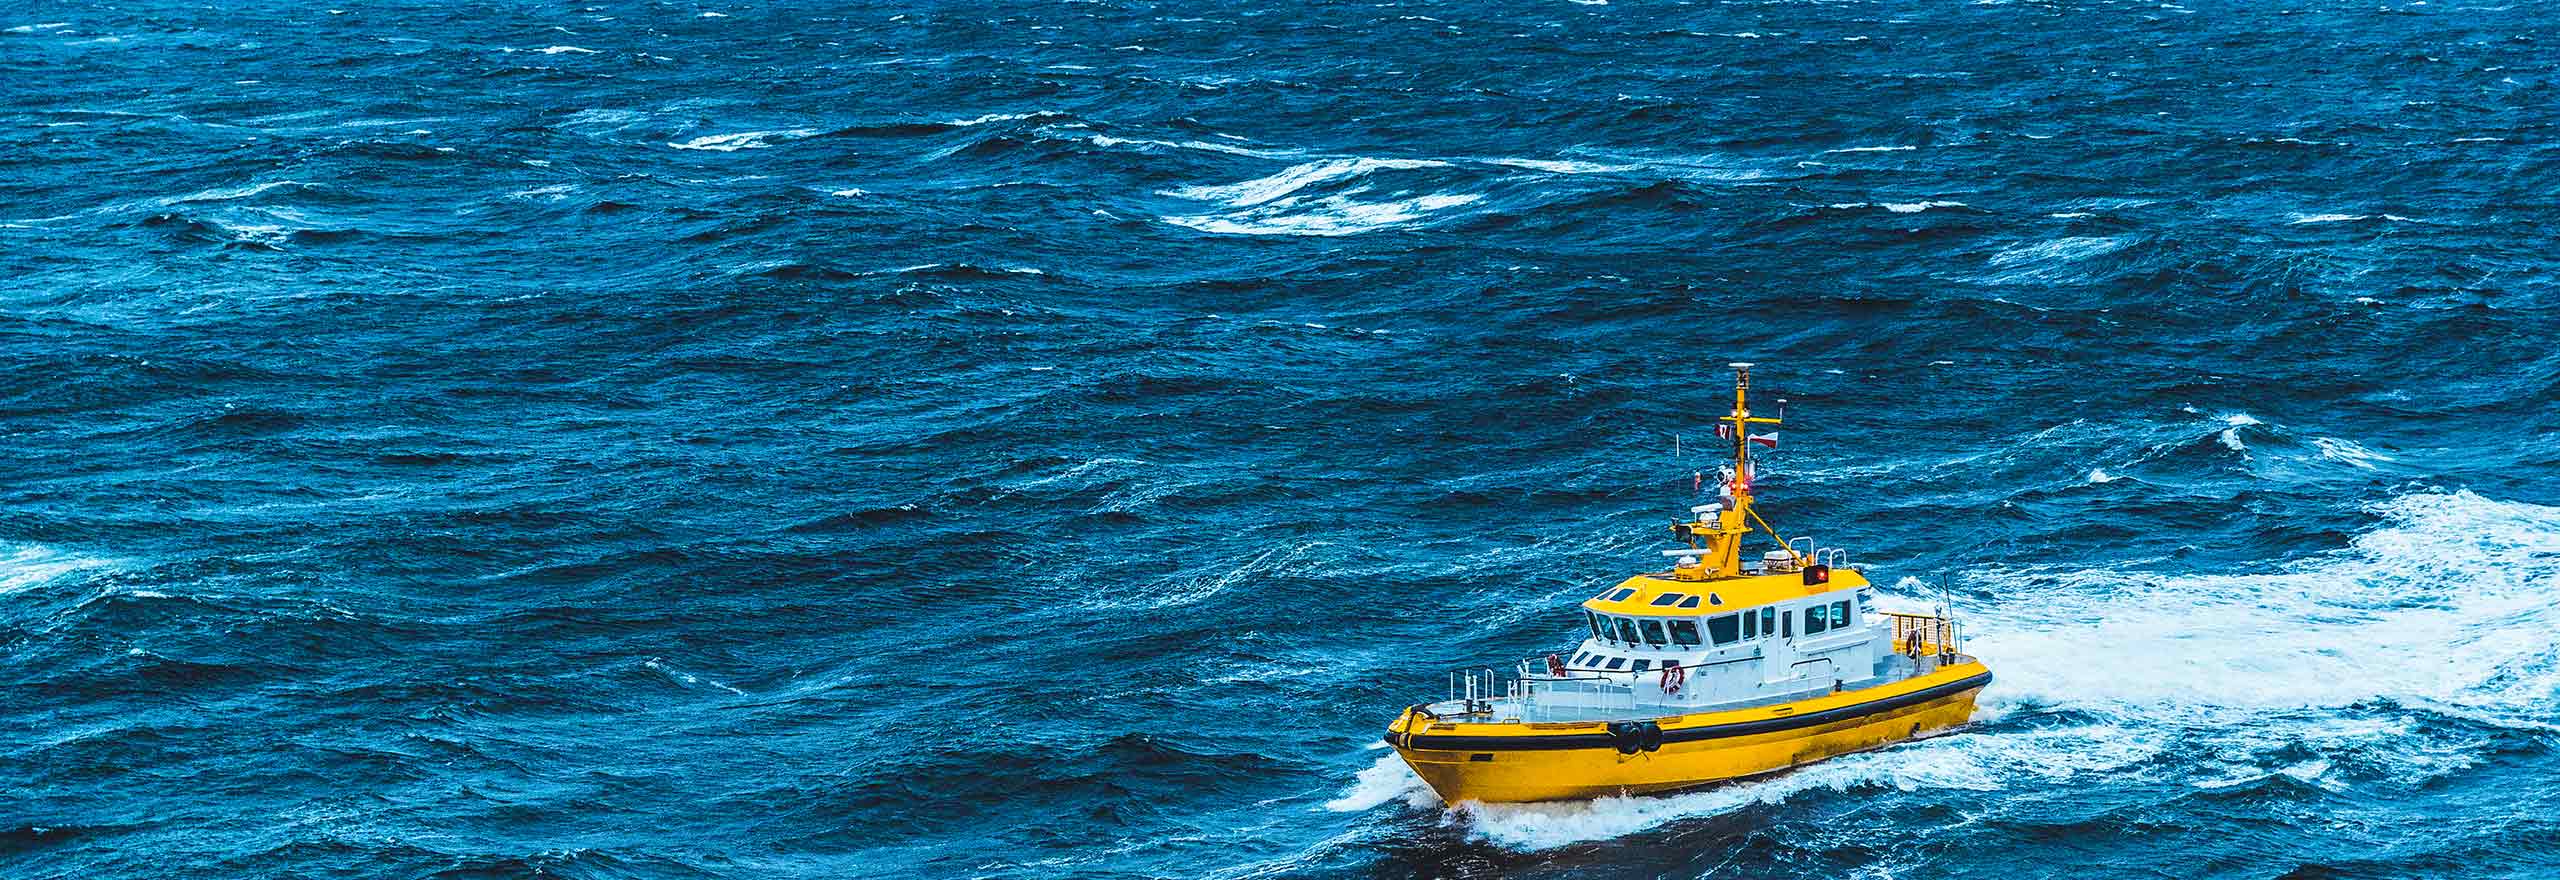 Una nave gialla della Guardia Costiera viene mostrata al largo in un mare agitato e in tempesta.